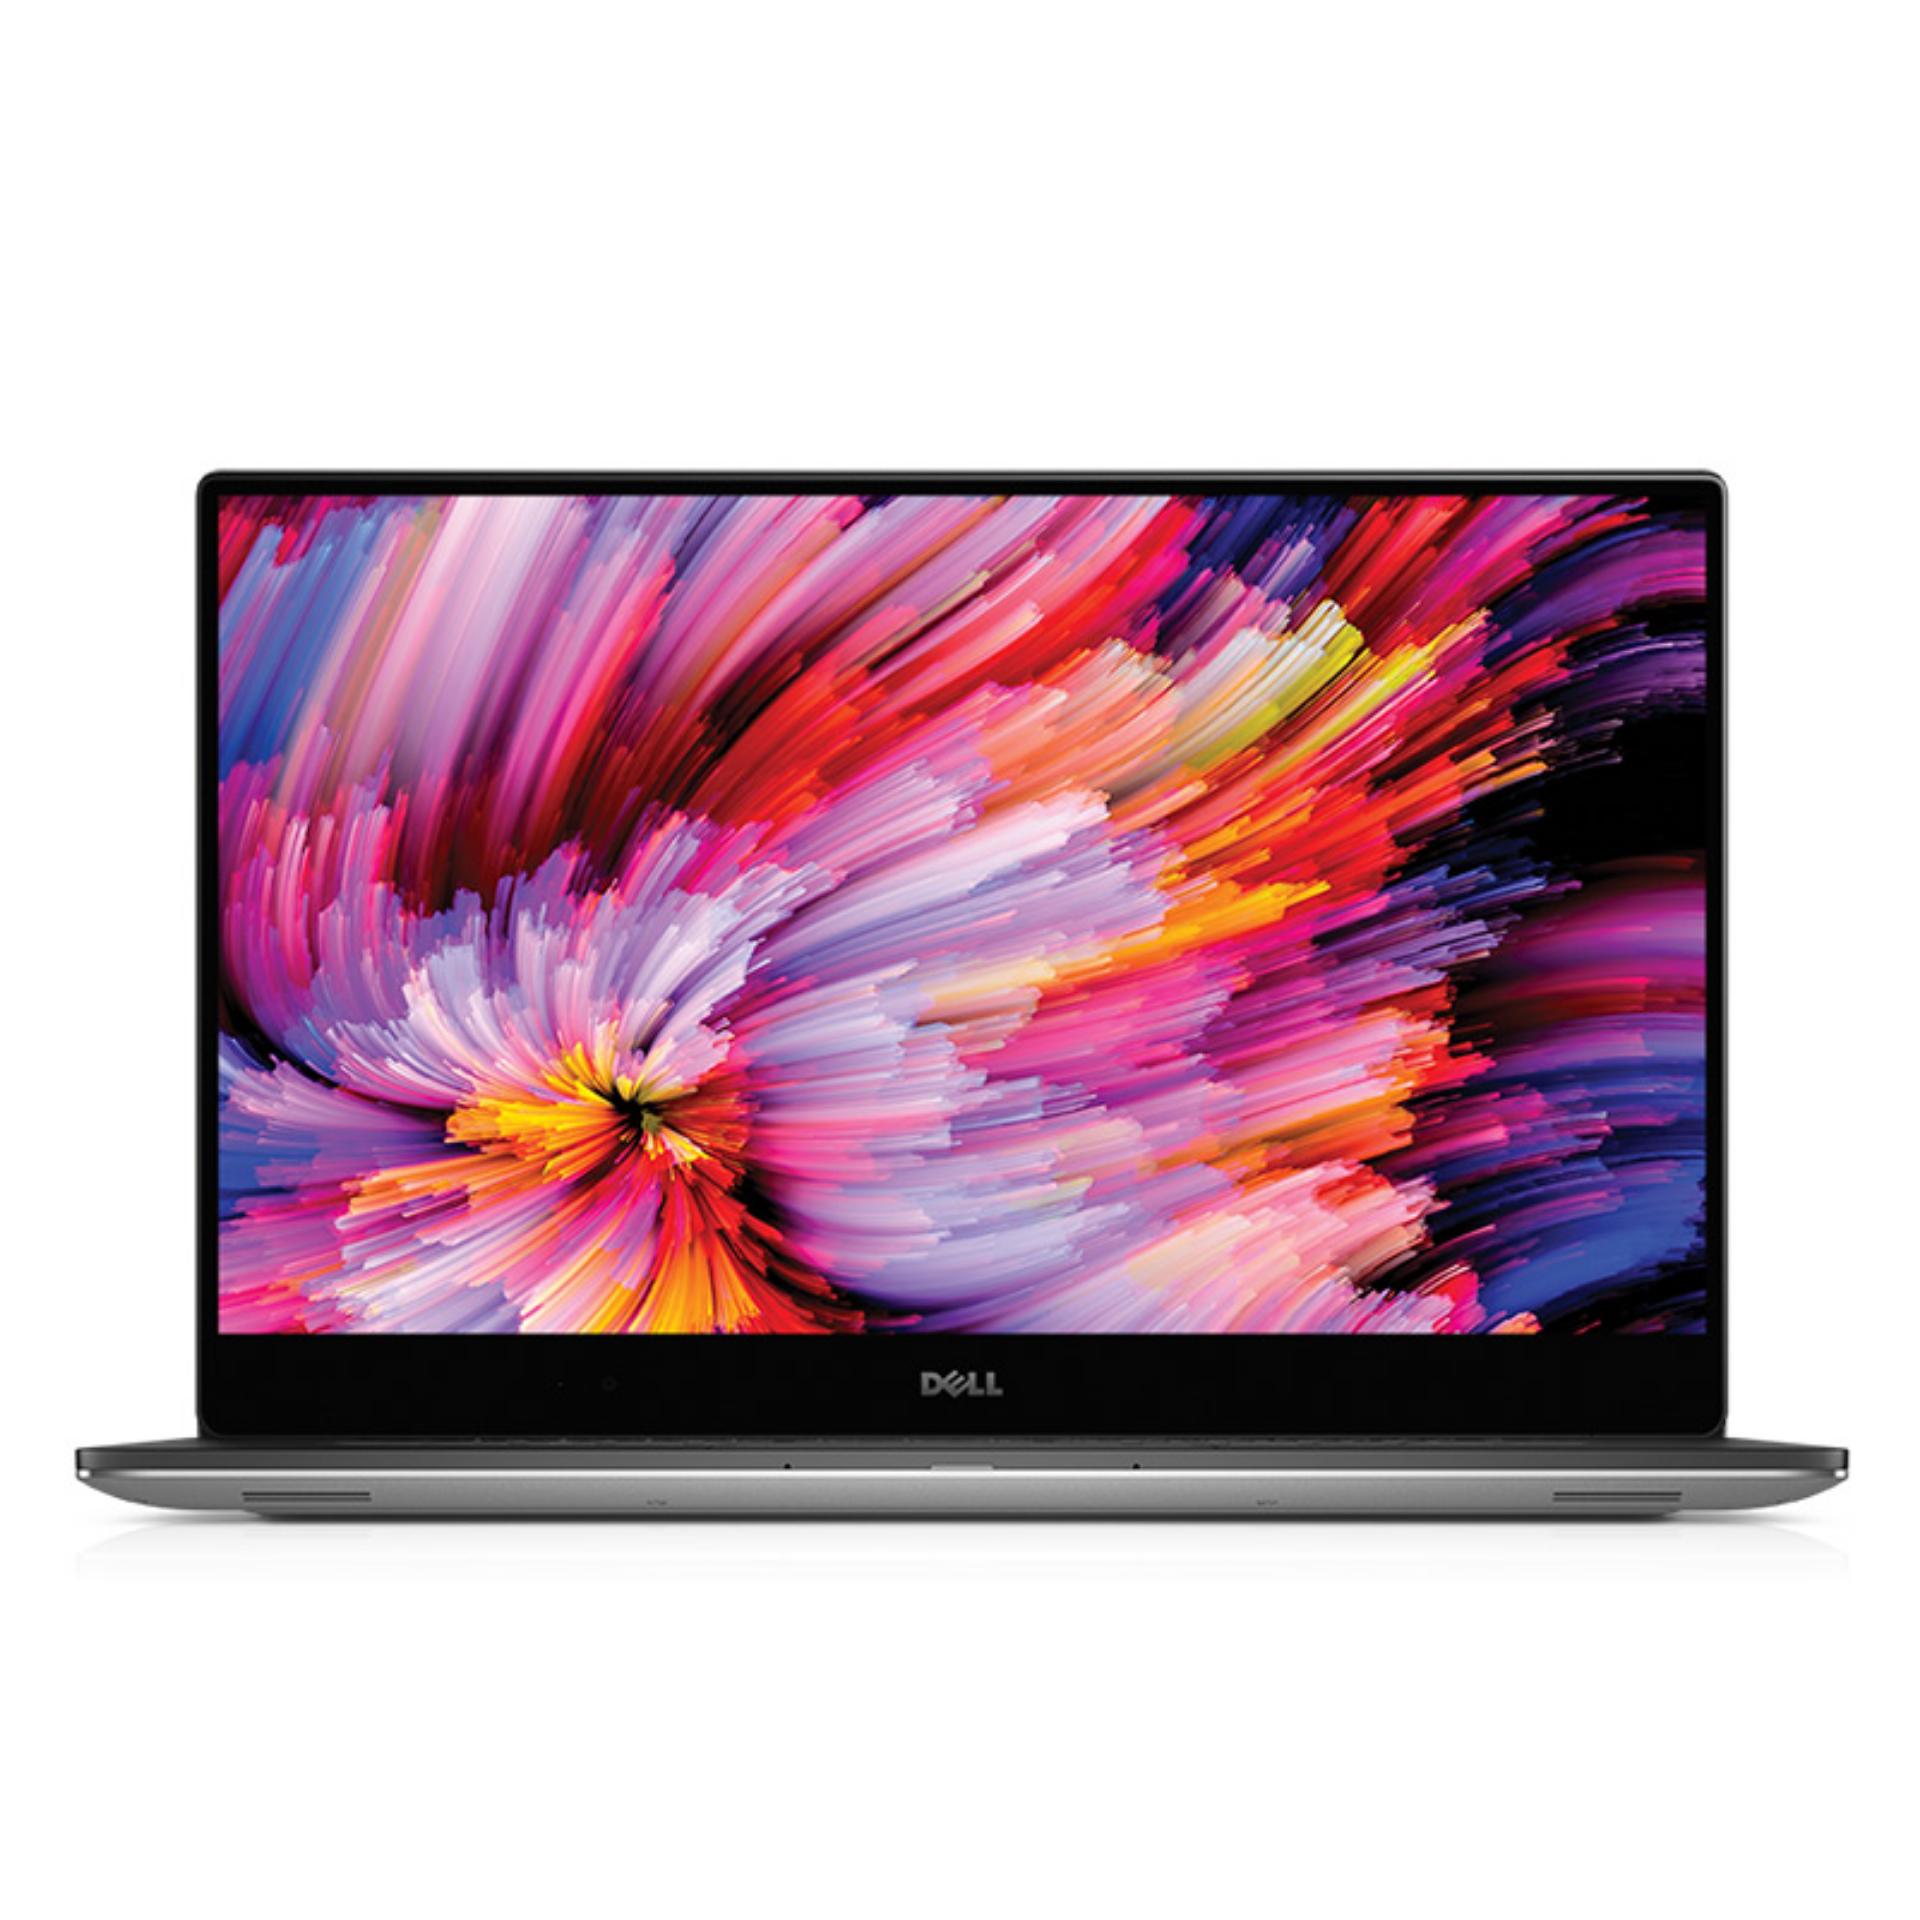 Laptop DELL XPS15-9560 i7 7700HQ 4GB Geforce GTX1050 15.6FHD – Hàng nhập khẩu